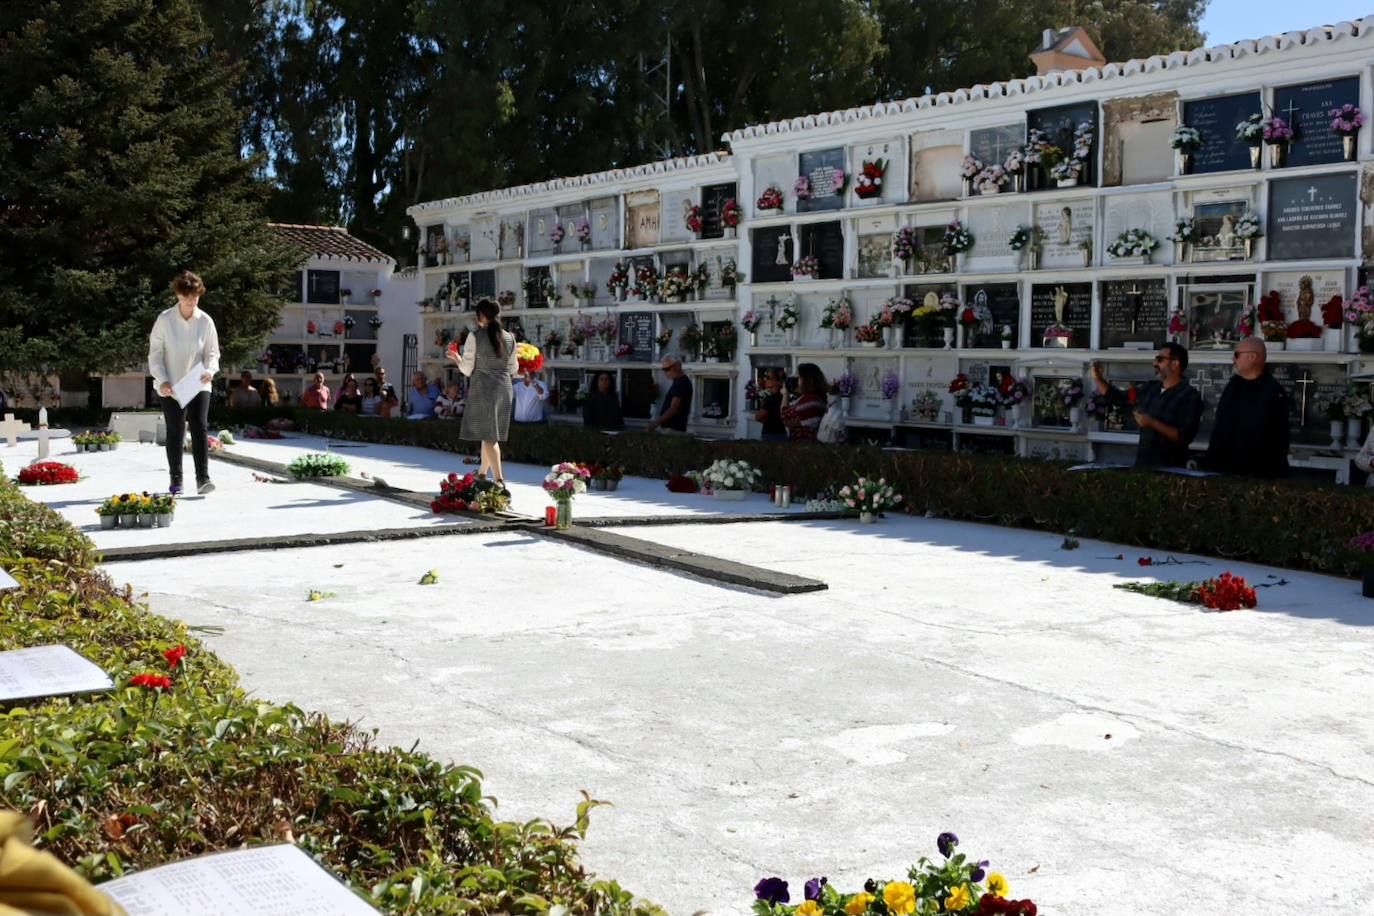 En el cementerio de Ronda se llevó a cabo el tradicional homenaje a víctimas de la Guerra Civil cuyos restos fueron depositados en fosas en el camposanto rondeño